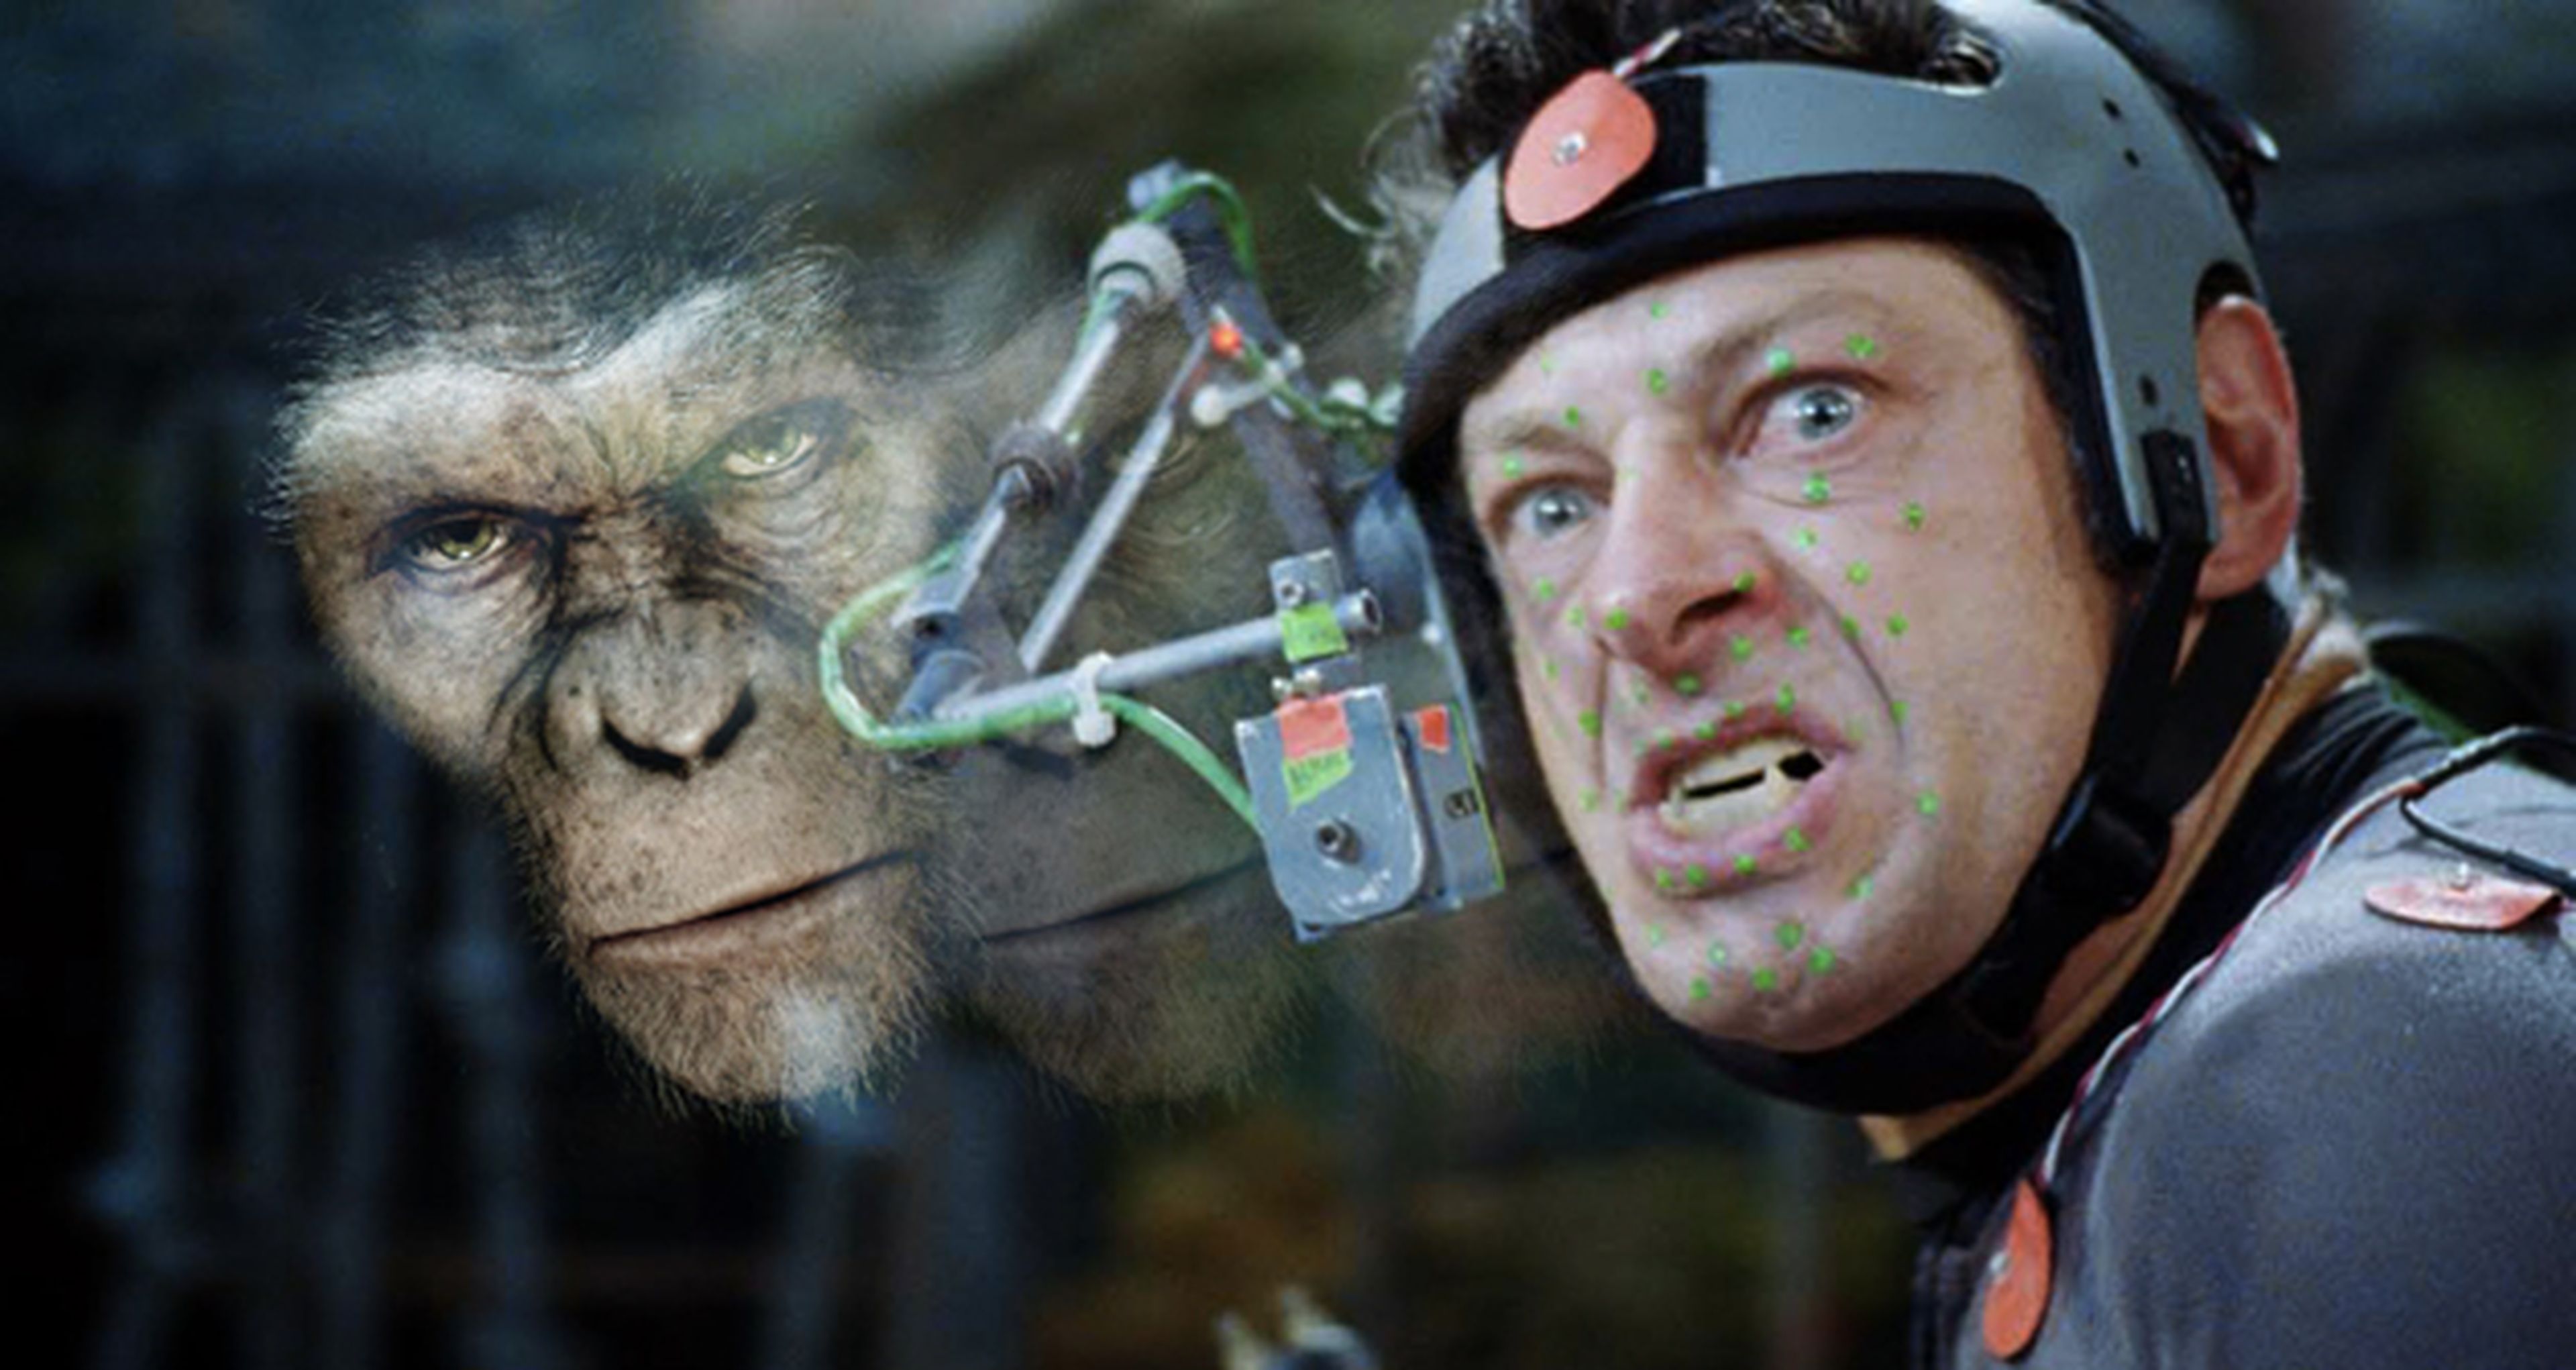 Cine de ciencia-ficción: crítica de El origen del planeta de los simios